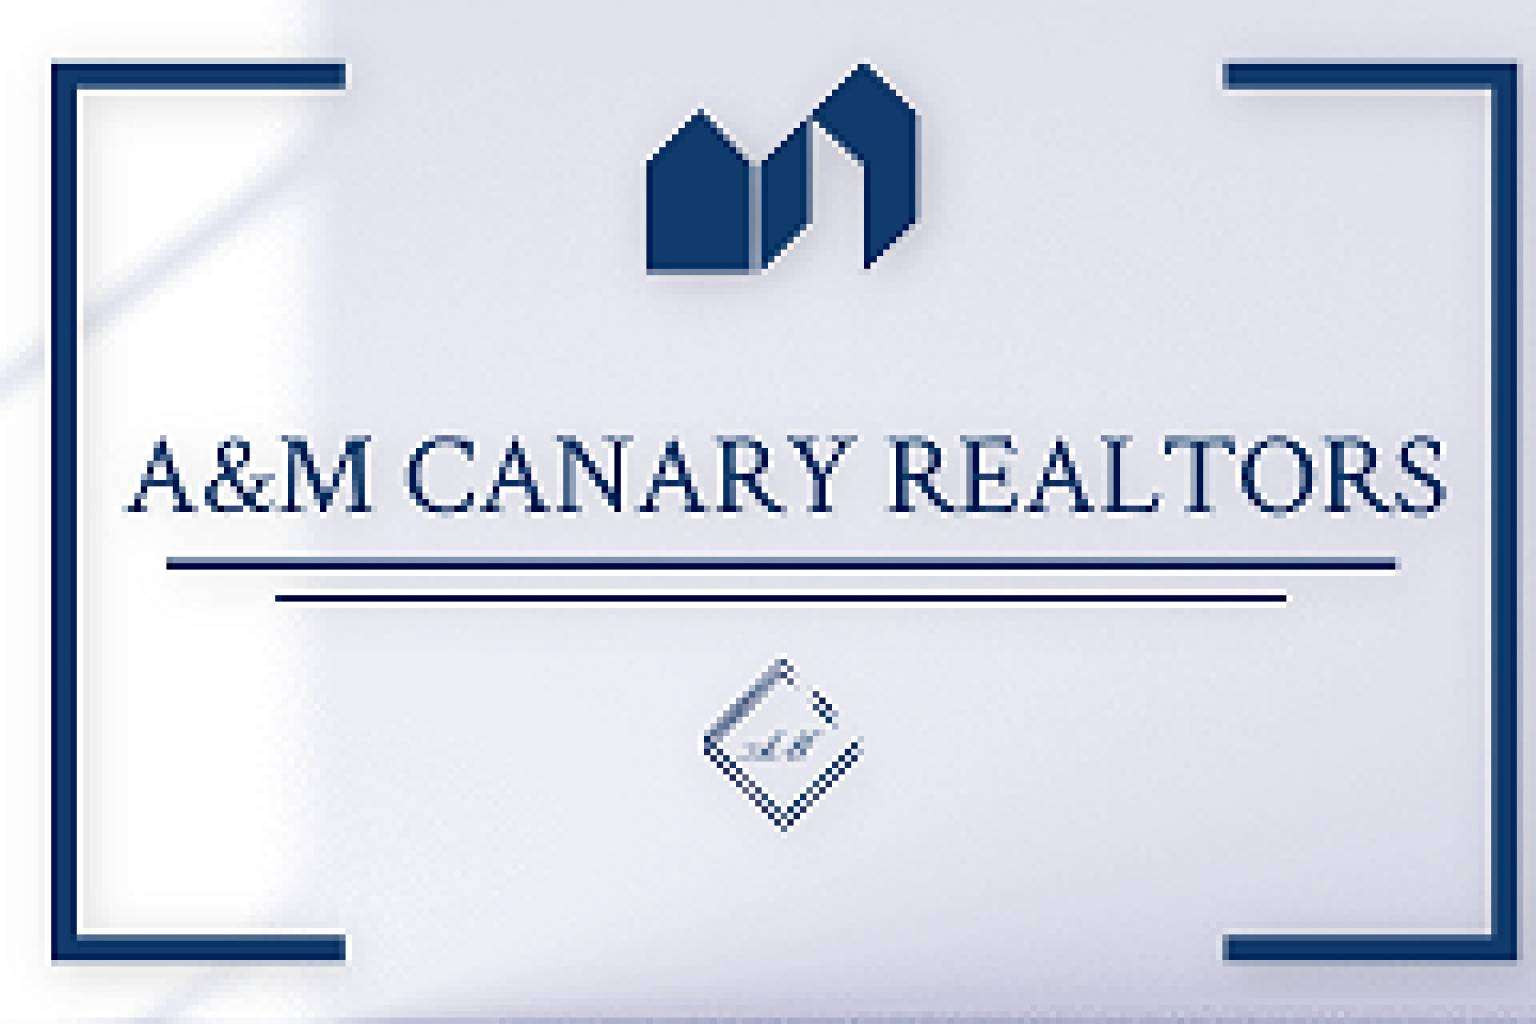  A&M Canary Realtors y su oferta de viviendas ideales en Canarias 